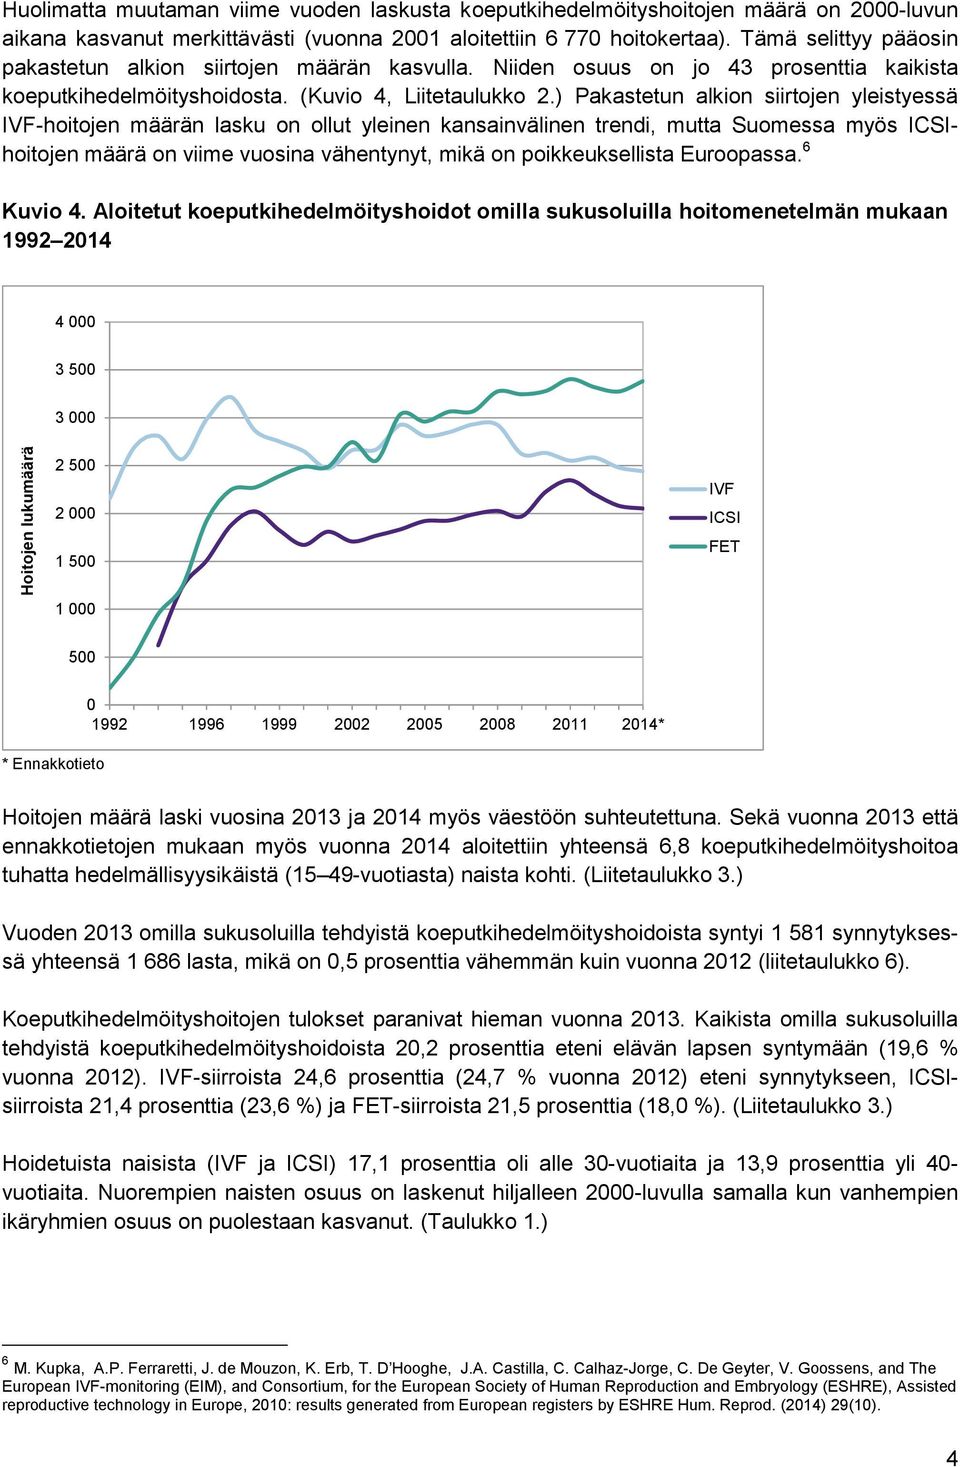 ) Pakastetun alkion siirtojen yleistyessä IVF-hoitojen määrän lasku on ollut yleinen kansainvälinen trendi, mutta Suomessa myös ICSIhoitojen määrä on viime vuosina vähentynyt, mikä on